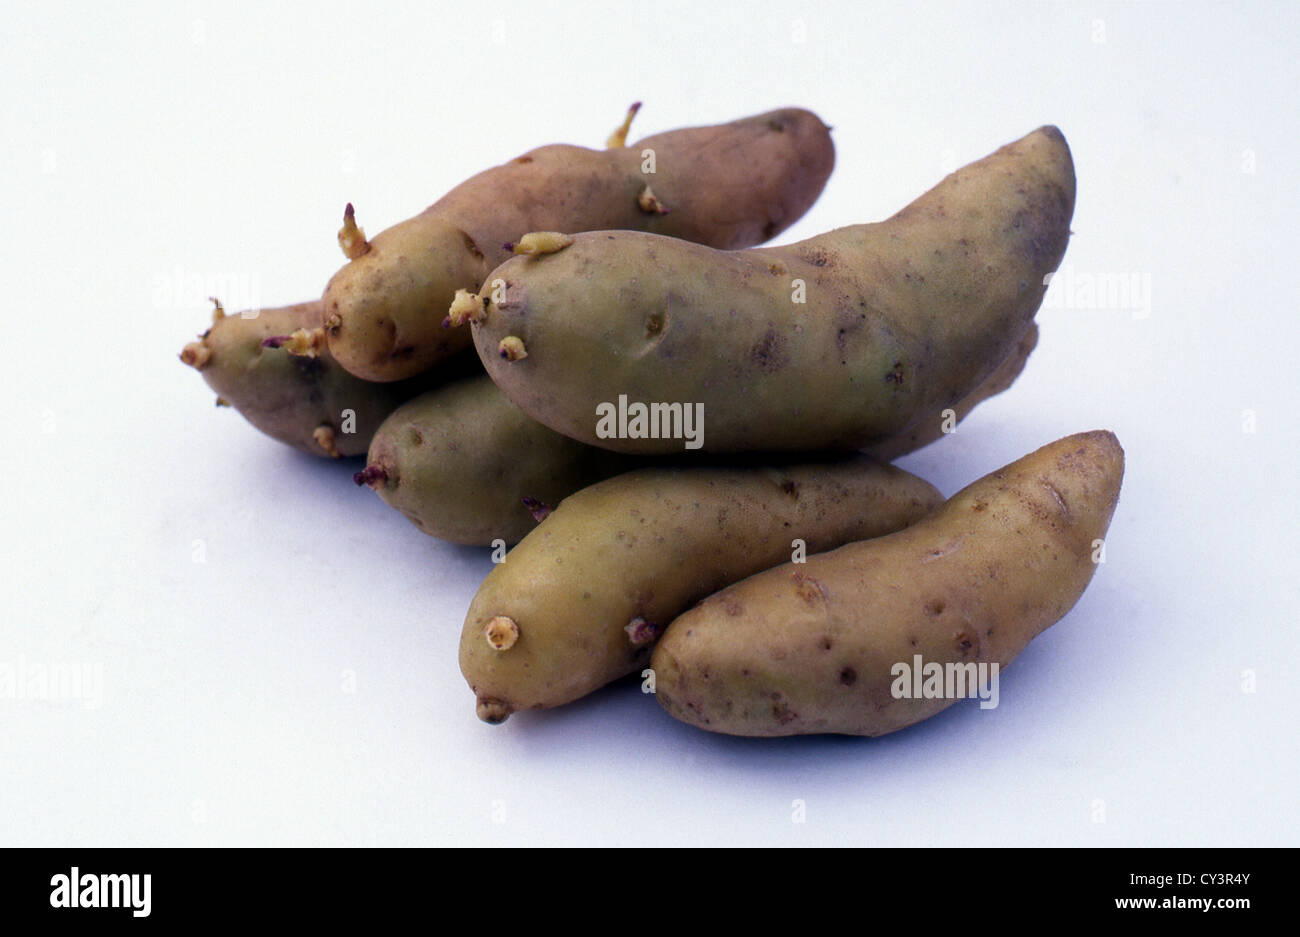 Campione di sei secondi insalata precoce patata (Solanum tuberosum) Cultivar 'Ratte' (sinonimi: 'Asparge', 'Cornichon') tuberi Foto Stock